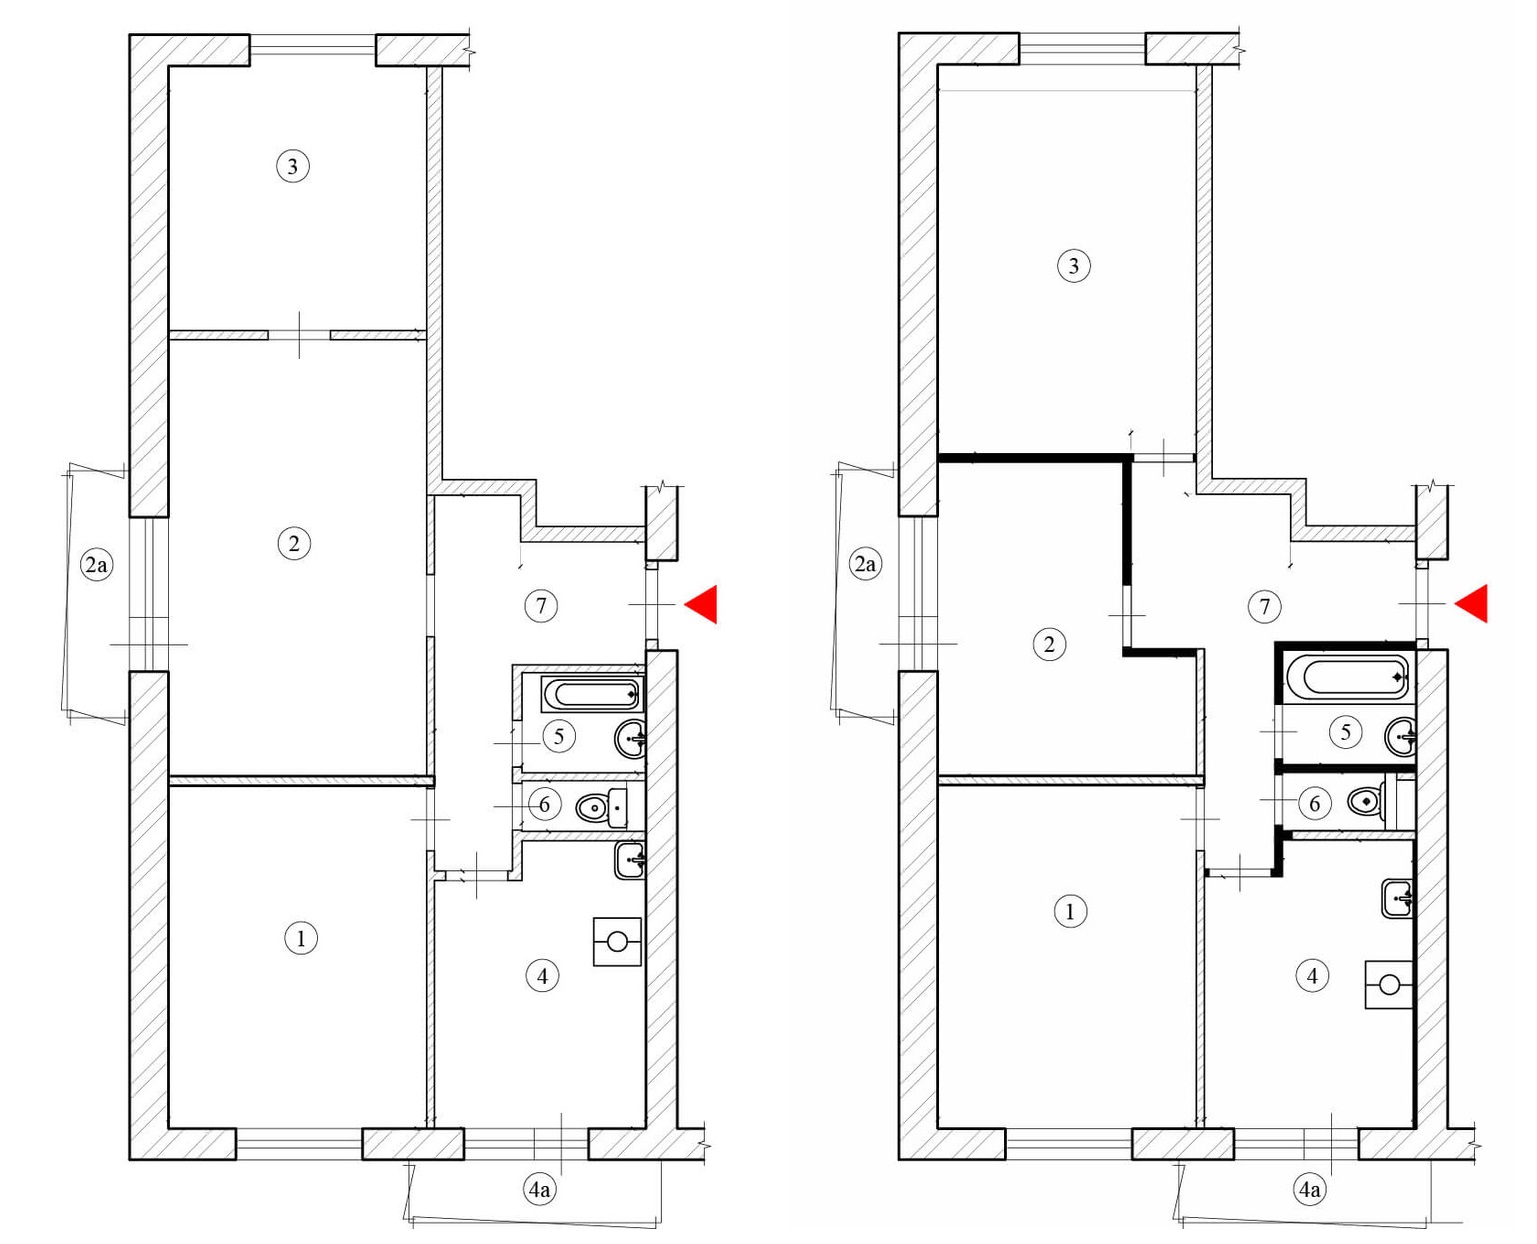 Варианты перепланировки 3х комнатной квартиры - фото планировок  трехкомнатных квартир - PEREPLAN